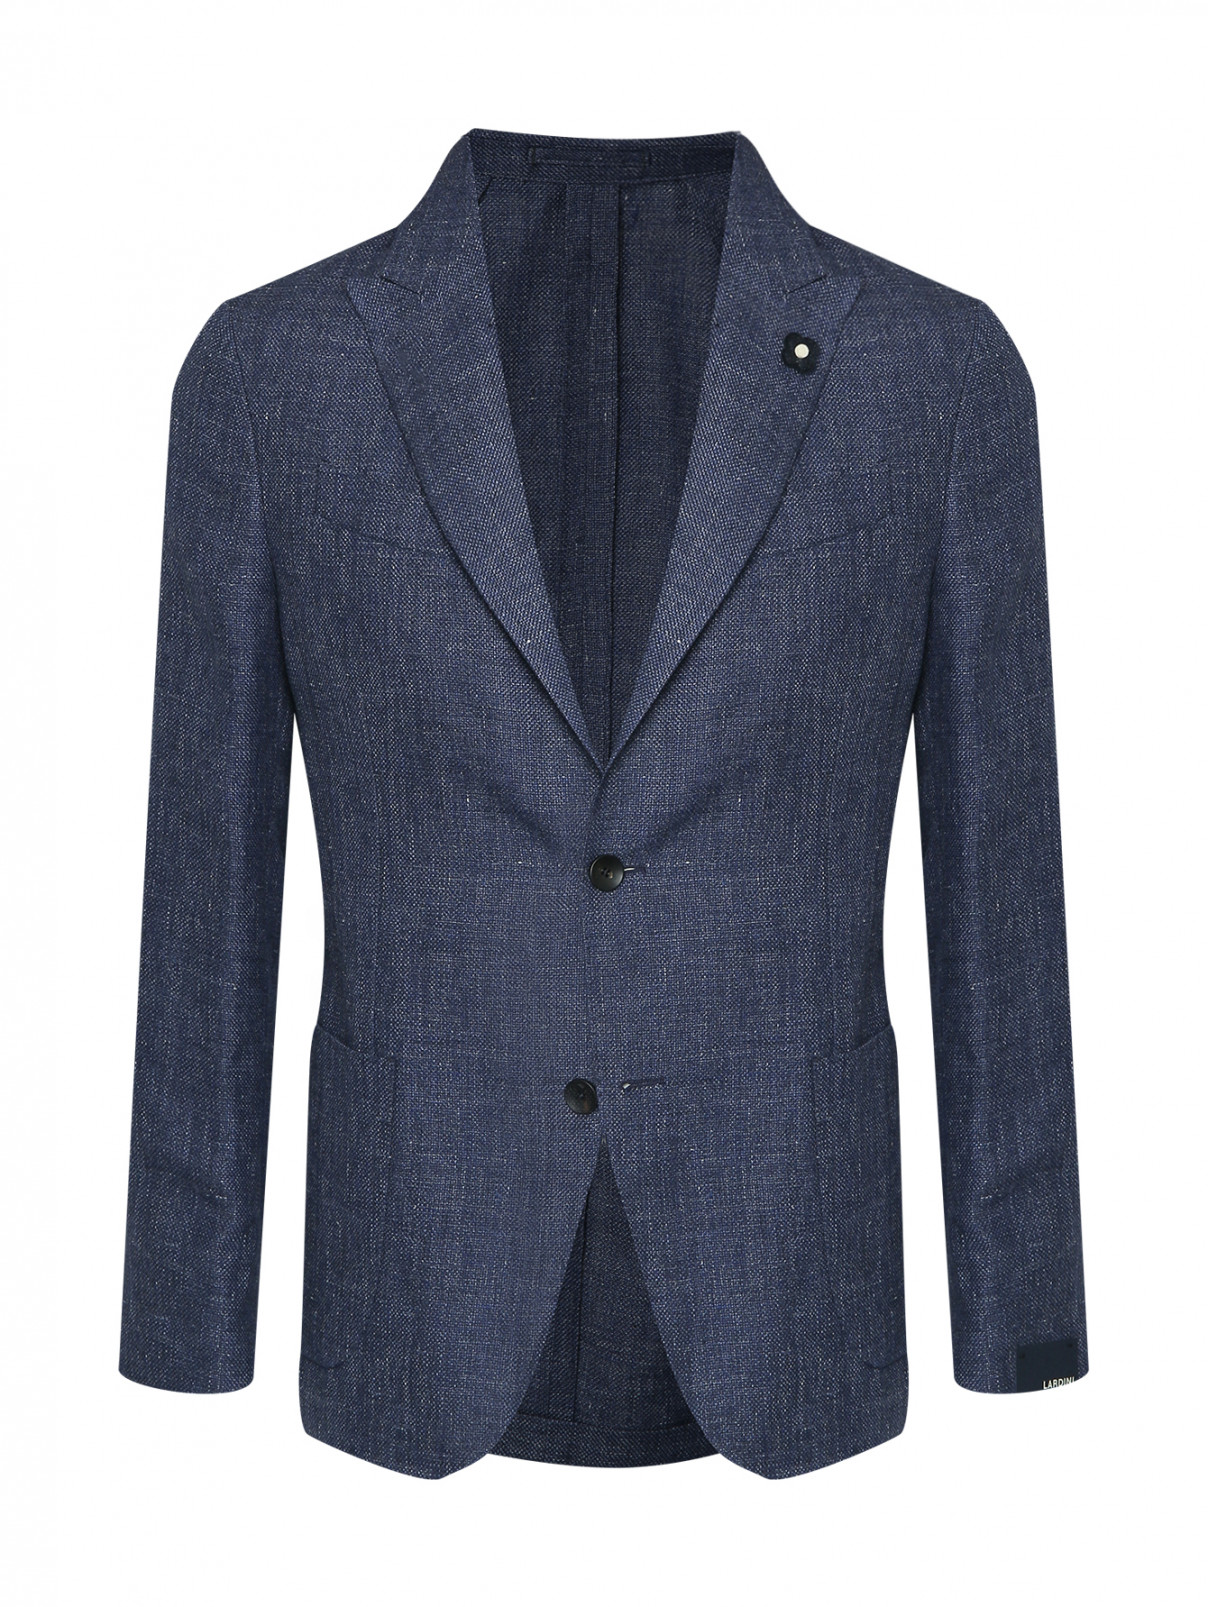 Пиджак из льна и шерсти с карманами LARDINI  –  Общий вид  – Цвет:  Синий